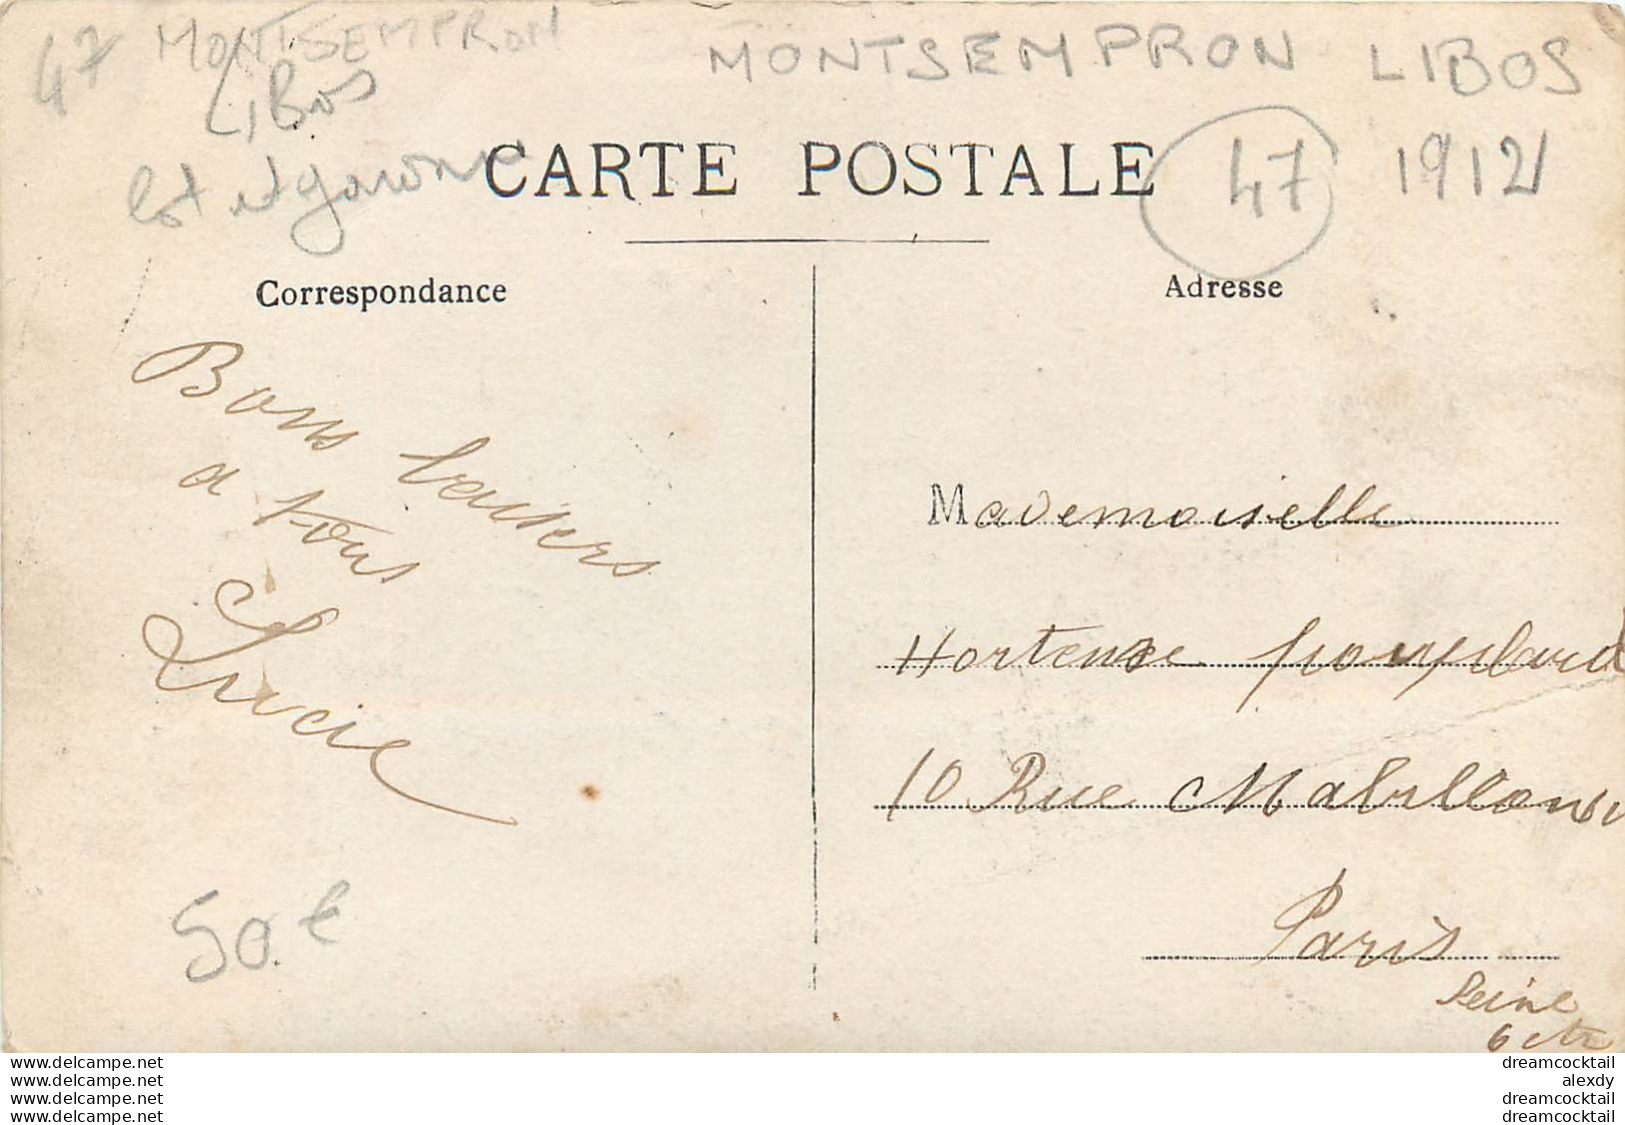 47 MONTSEMPRON LIBOS. Superbe Attelage Avec Guide Et élégantes En Ballade. Rare Photo Carte Postale 1912 - Libos